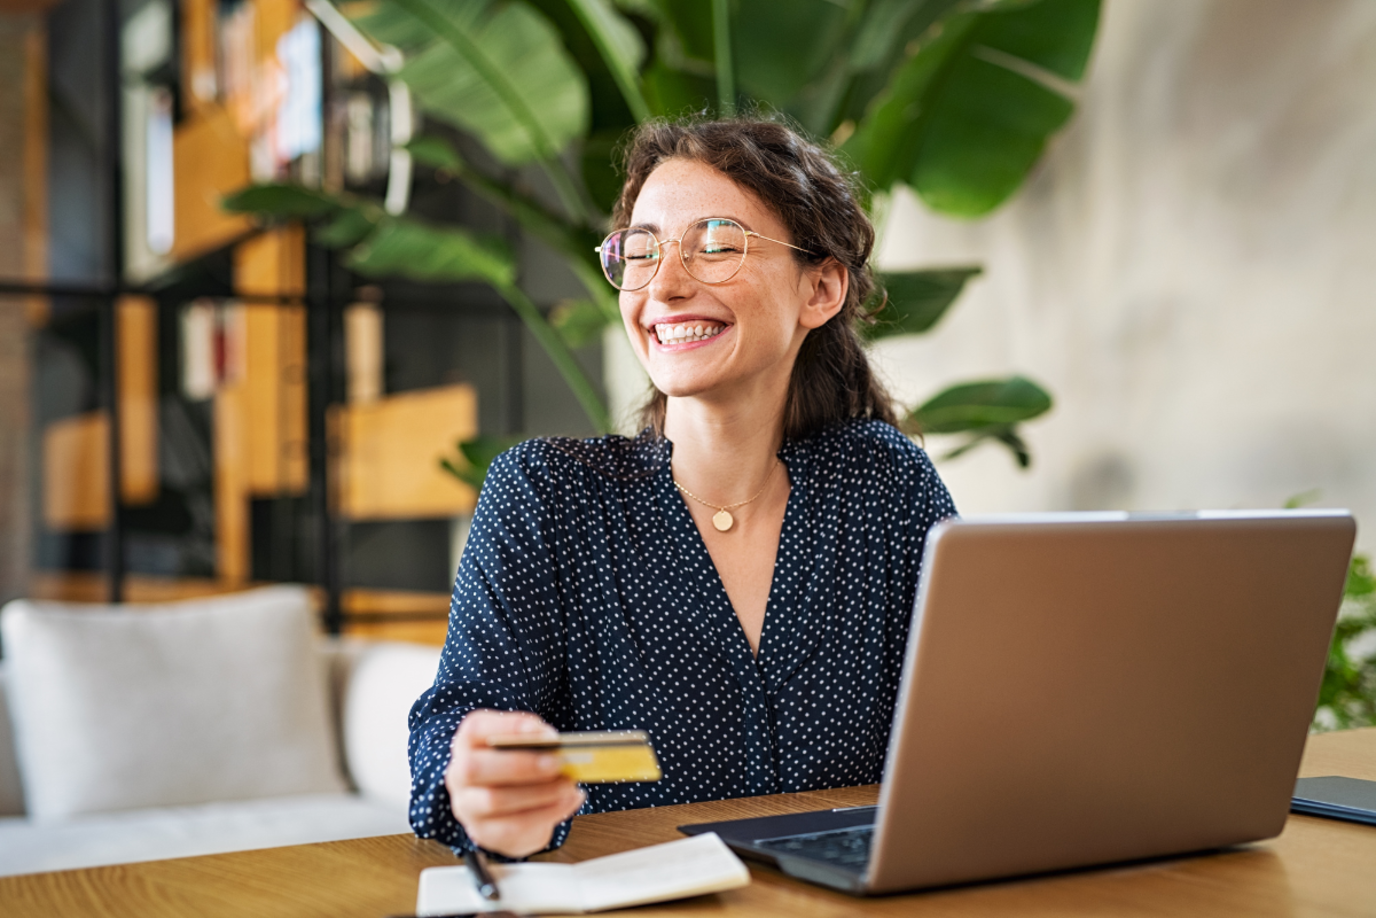 Junge Frau am Tisch mit Laptop, die glücklich lächelnd ihre Bankkarte in der Hand hält